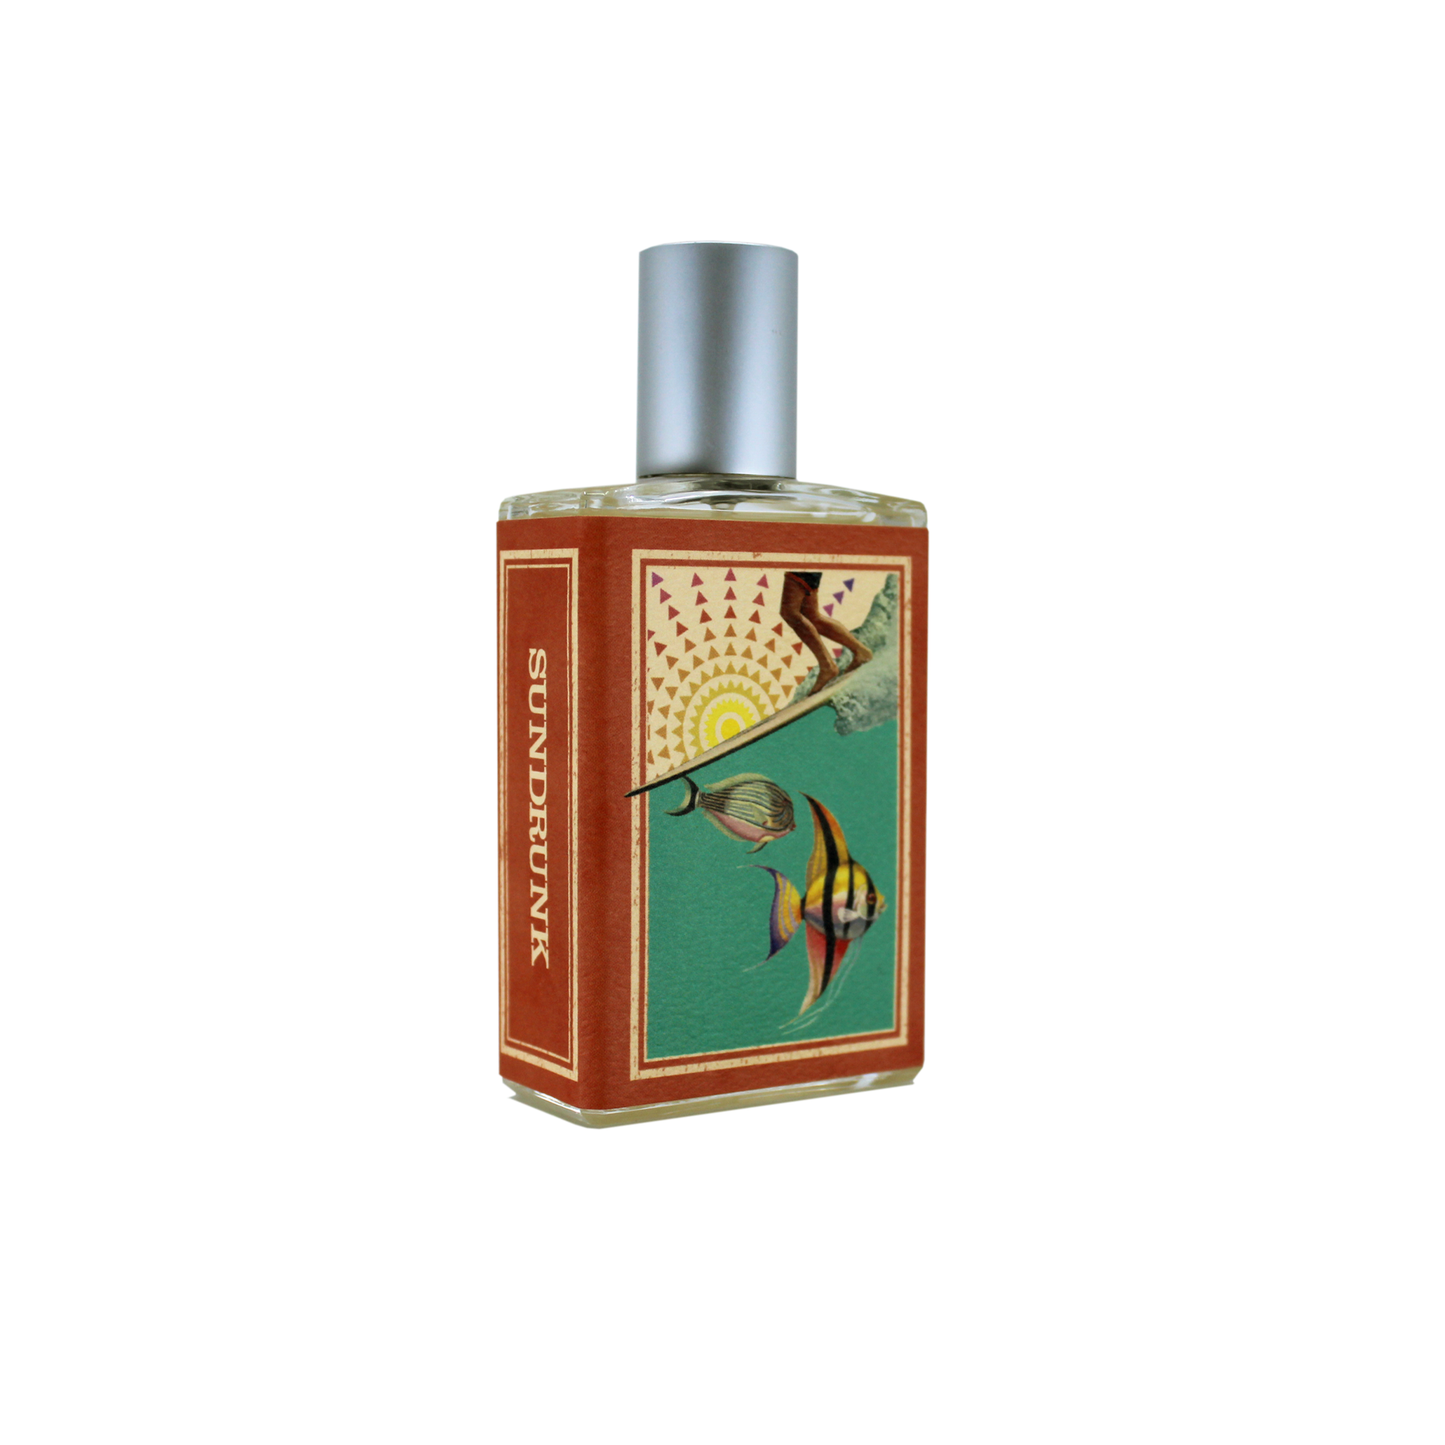 Sundrunk .5 oz Eau de Parfum - Travel Spray